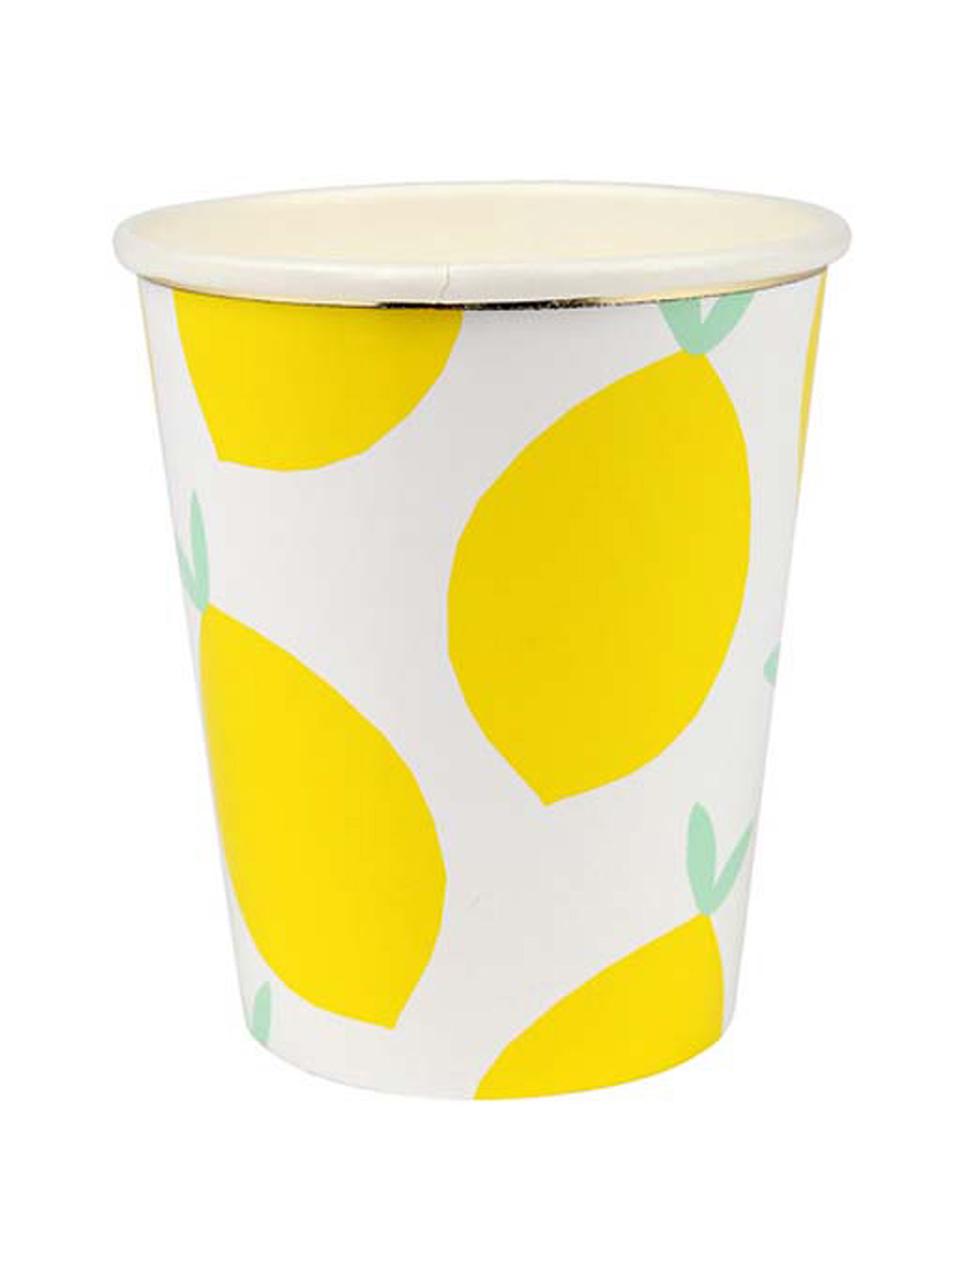 Papírový pohárek Lemon, 8 ks, Bílá, žlutá, zelená